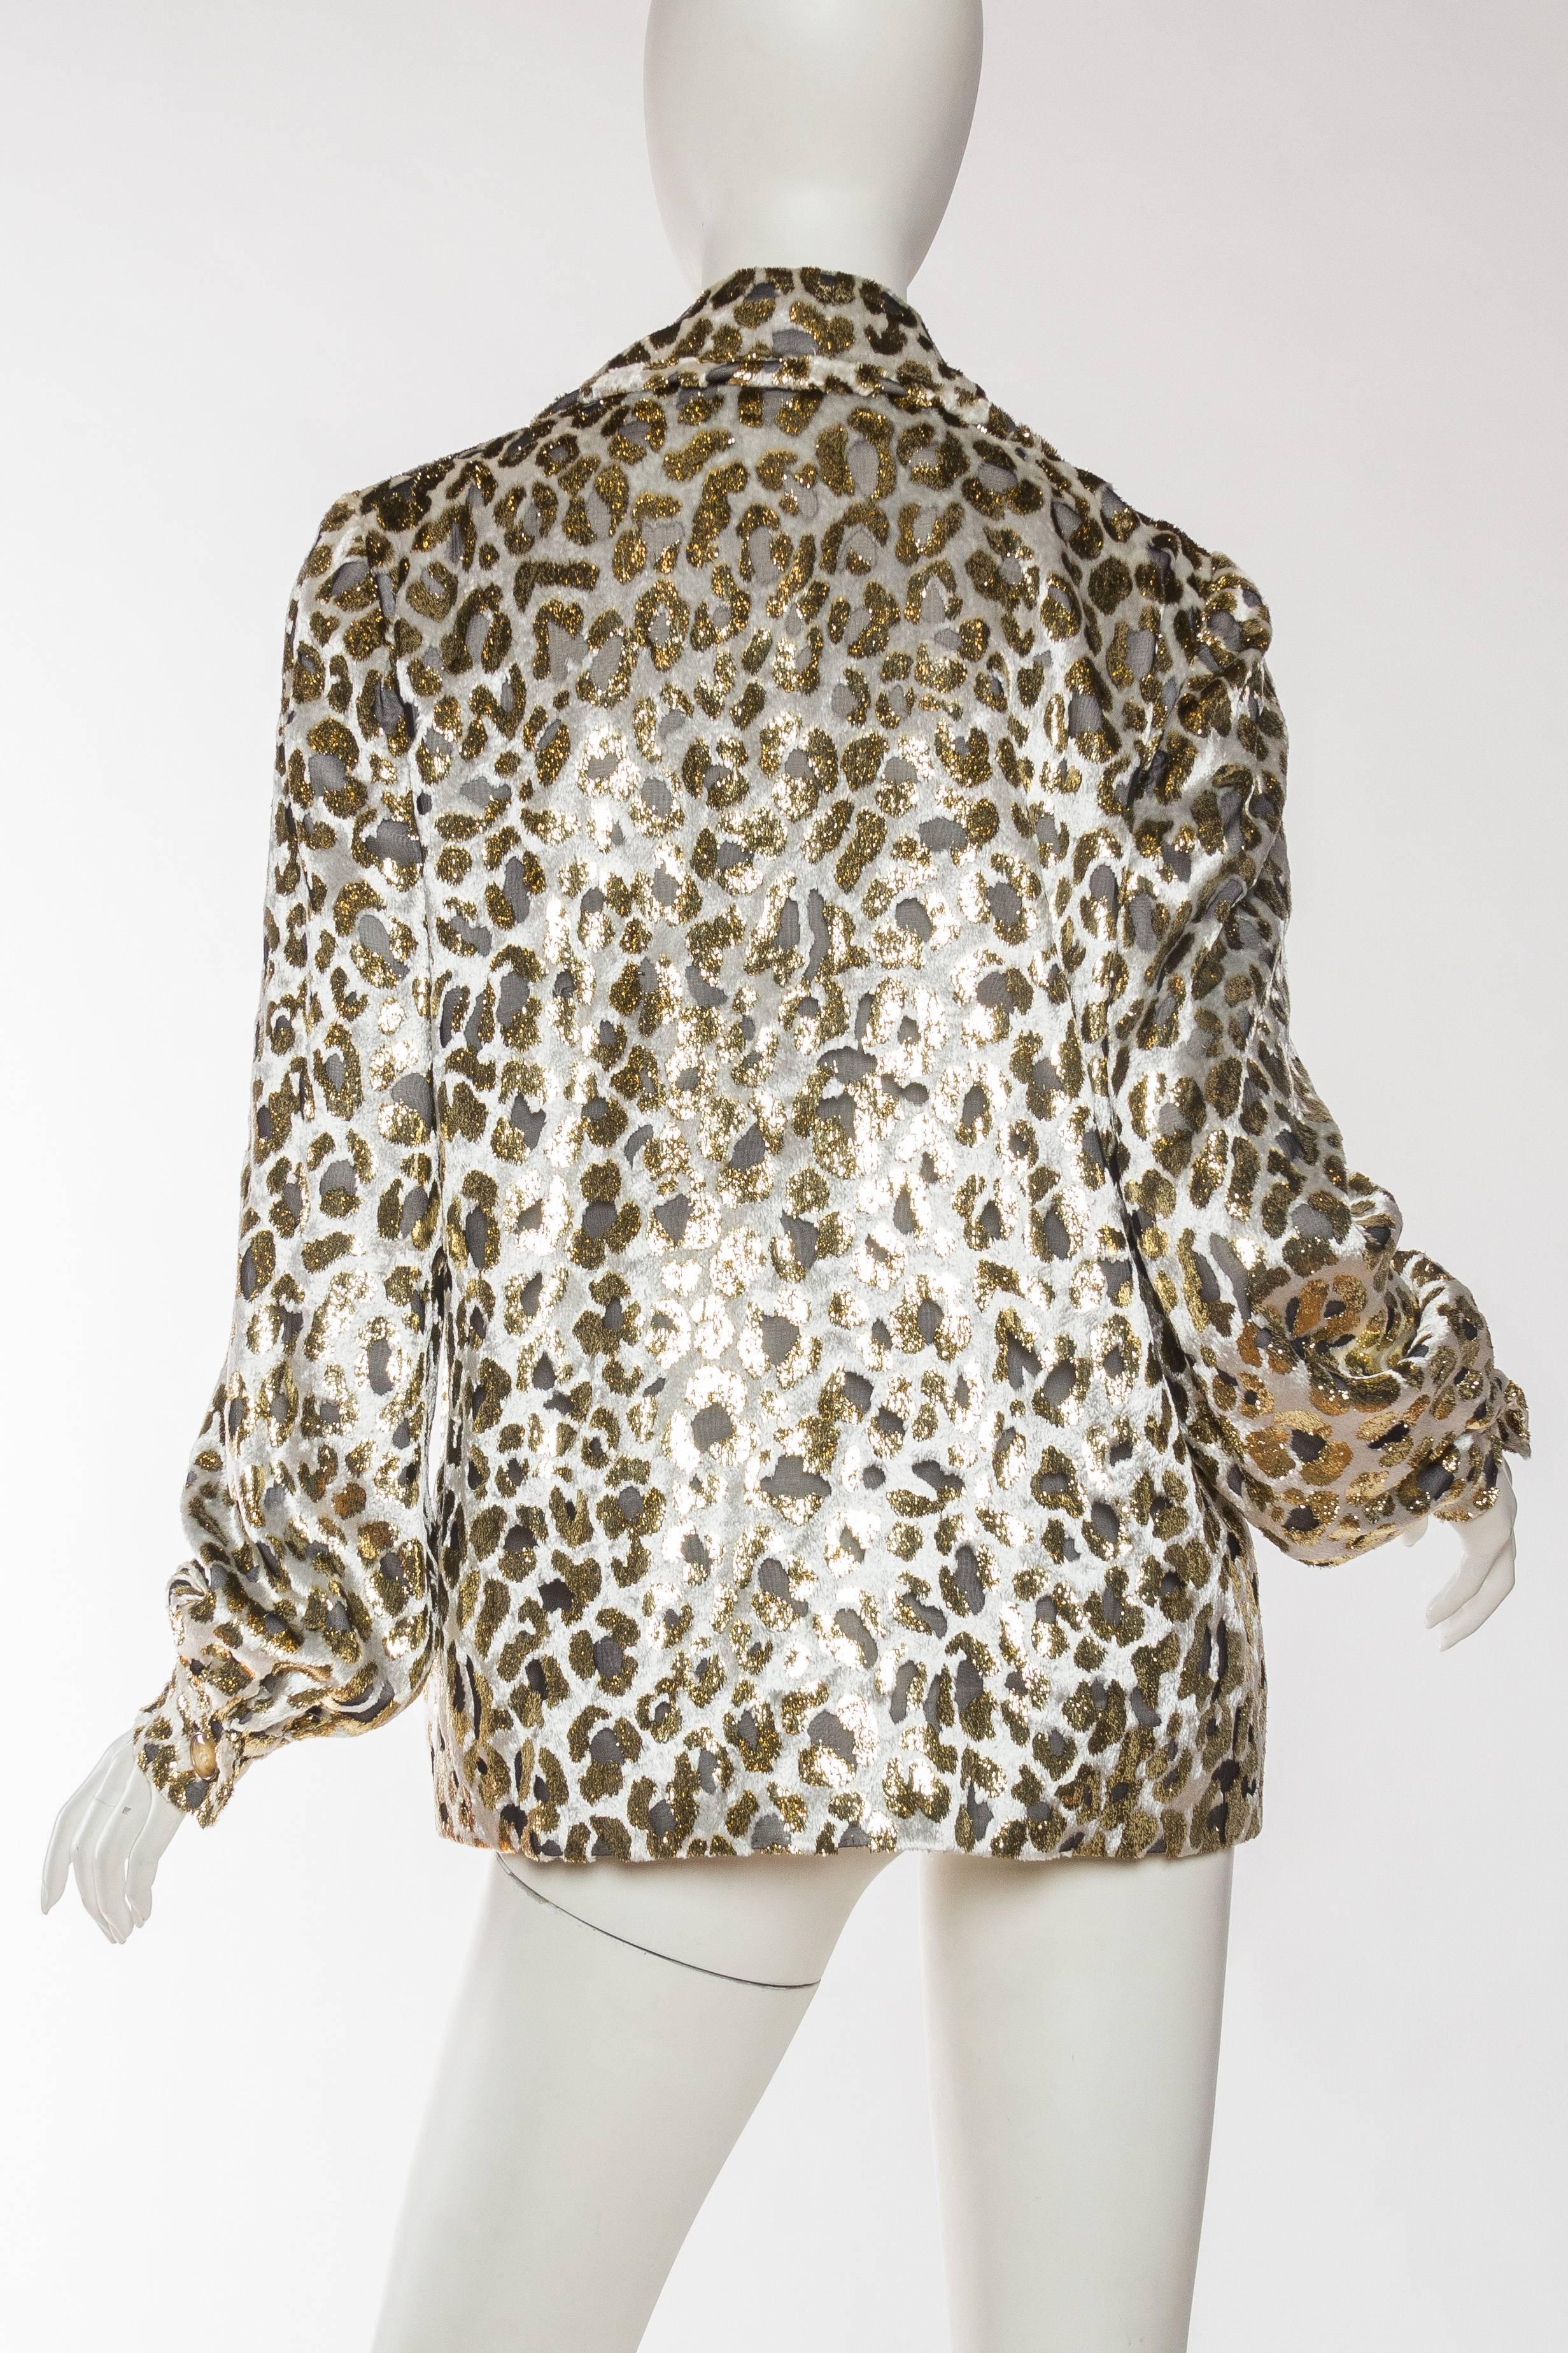 Gold Lurex Velvet Leopard Jacket Blouse by Bill Blass 2